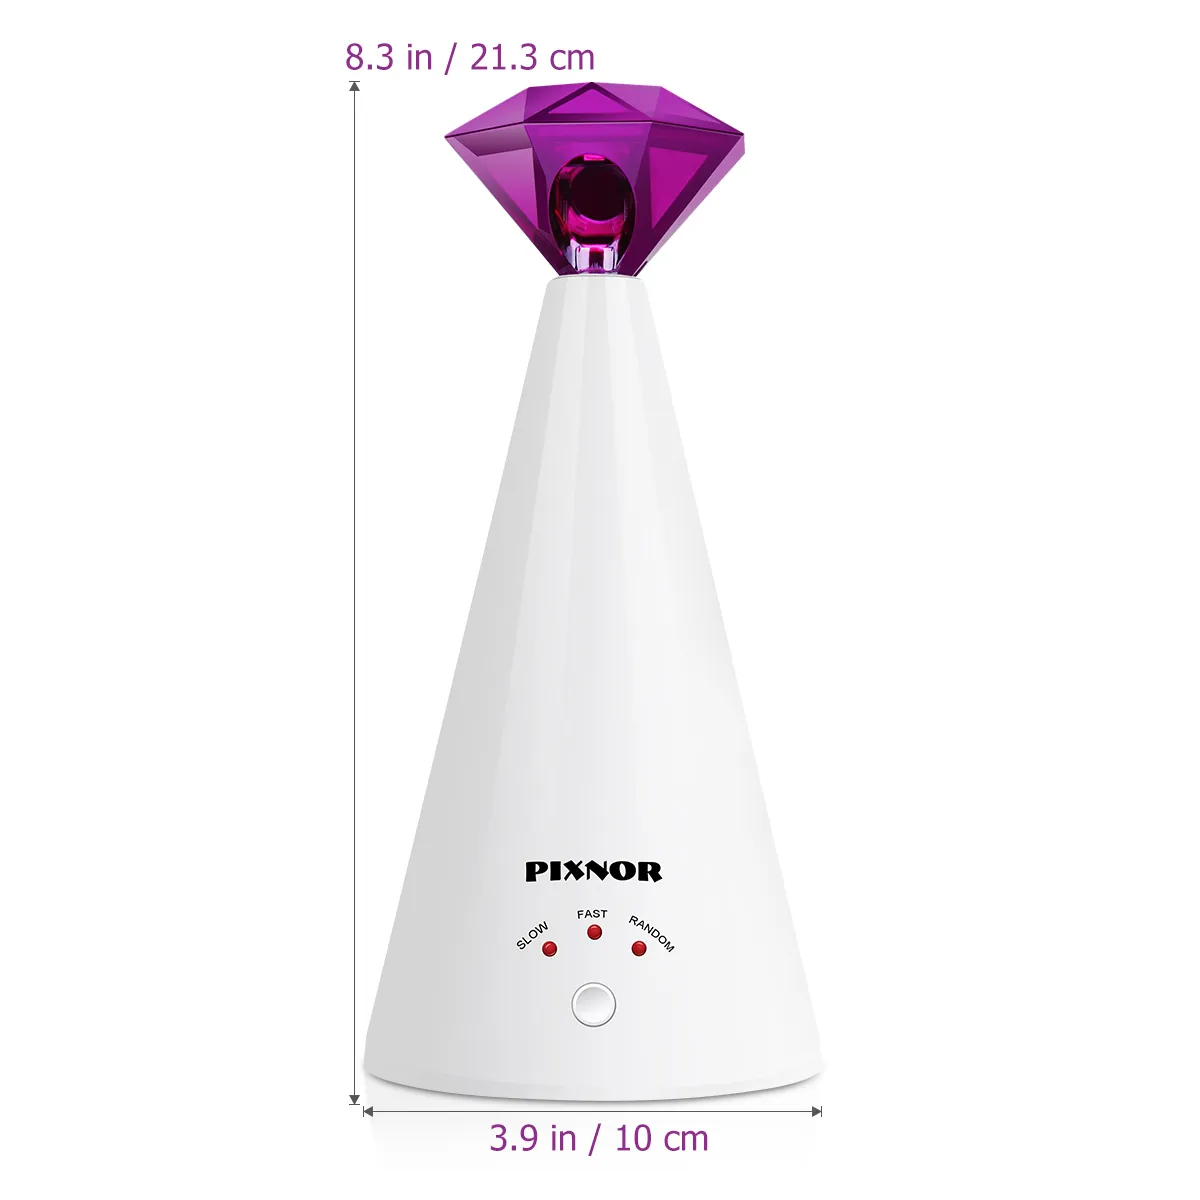 Pixnor Smart Laser Provocando dispositivo de brinquedo elétrico Home Home Interactive Ajustável 3 velocidades Ponteiro PET Purple 2011126216189